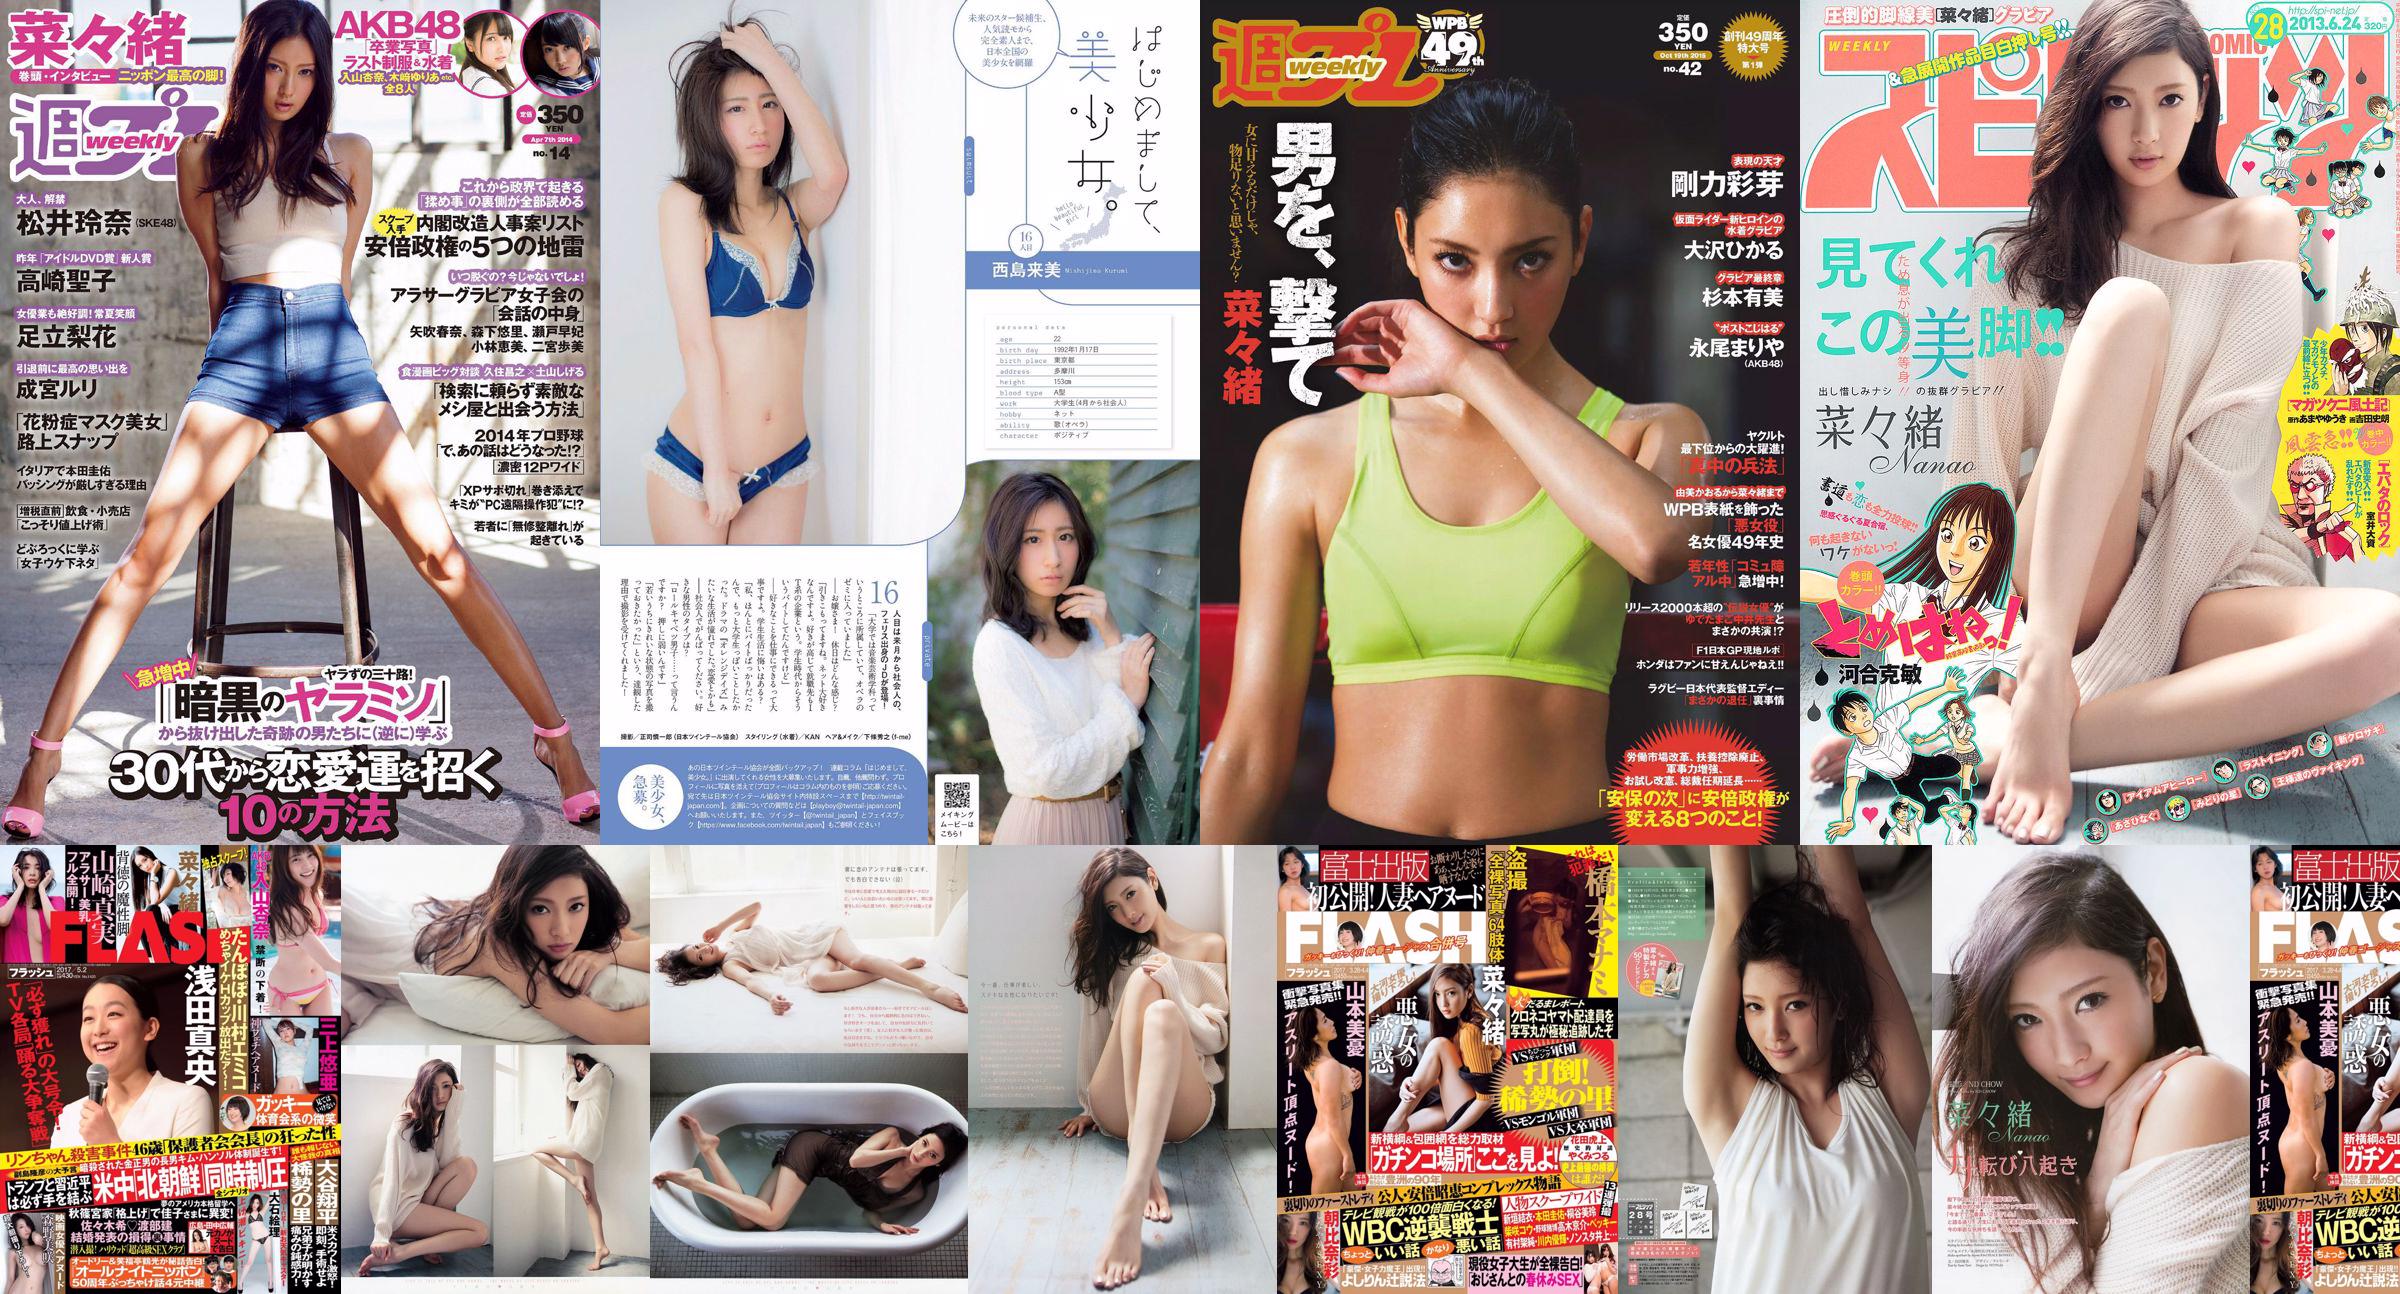 Nanao Yumi Sugimoto Hikaru Ohsawa Ayame Goriki Riona Nagao Mariya Nagao [Weekly Playboy] 2015 No.42 Photographie No.650c9a Page 2